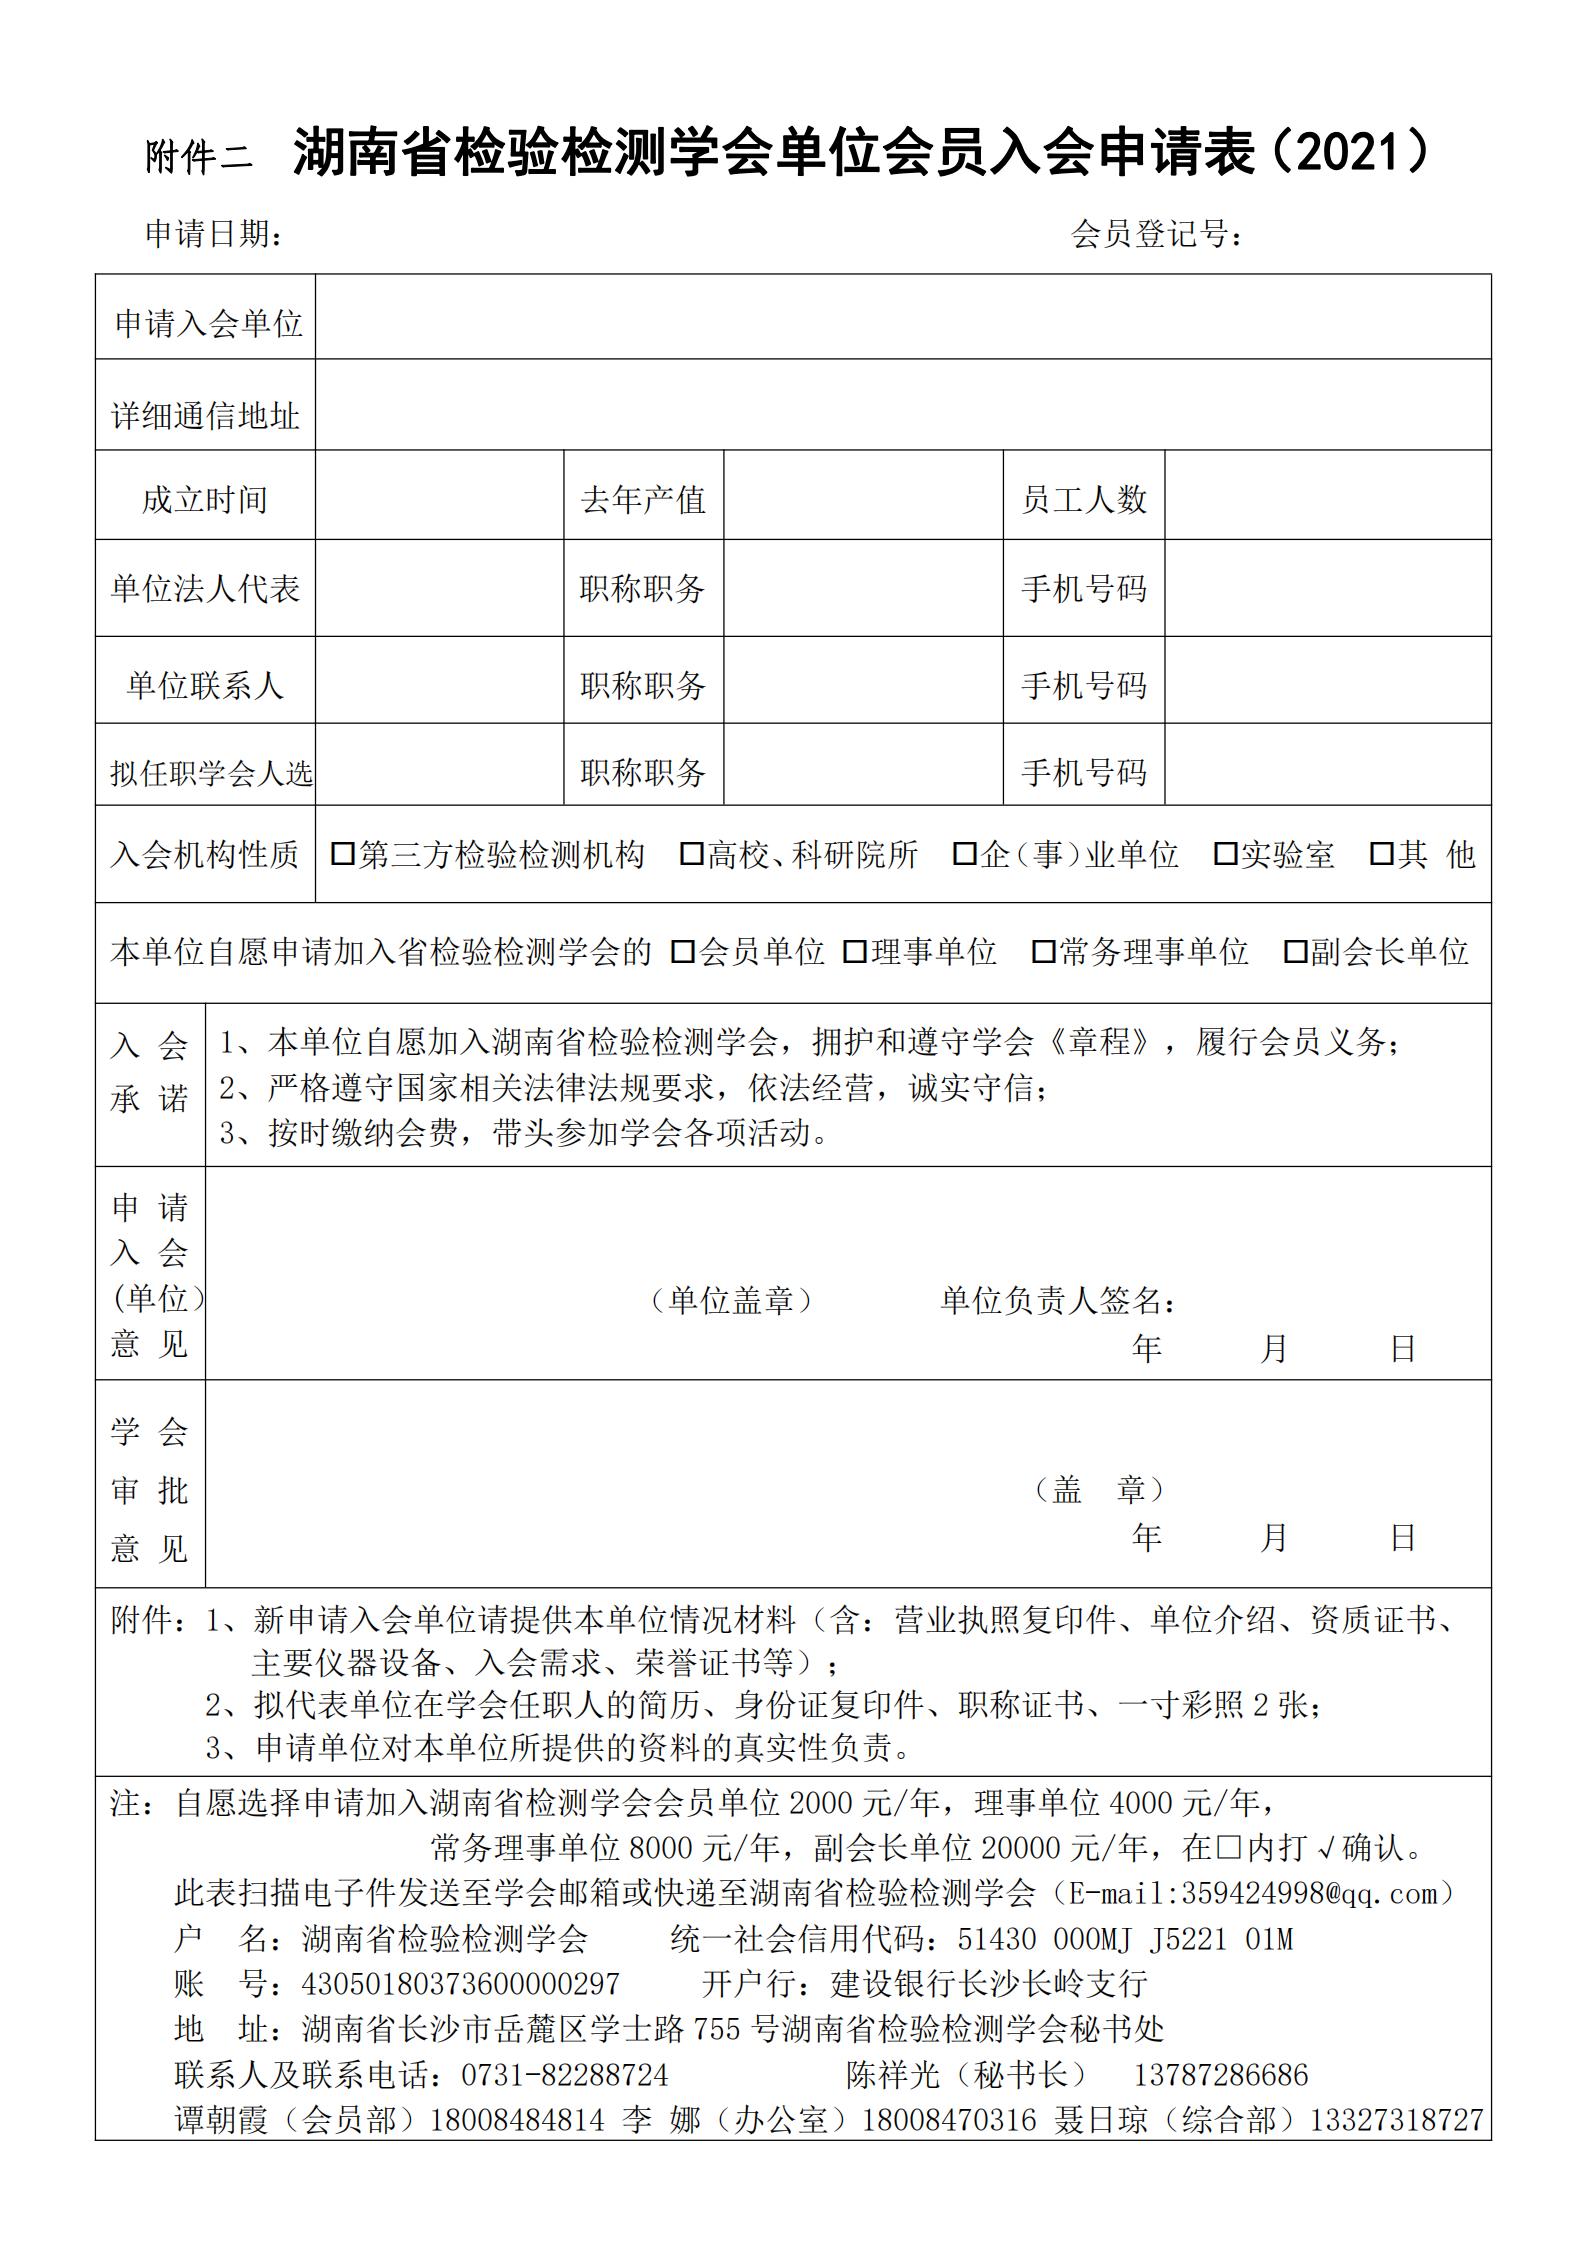 【会议通知】关于召开湖南省检验检测学会一届三次会员代表大会暨2021学术年会的预通知(图6)